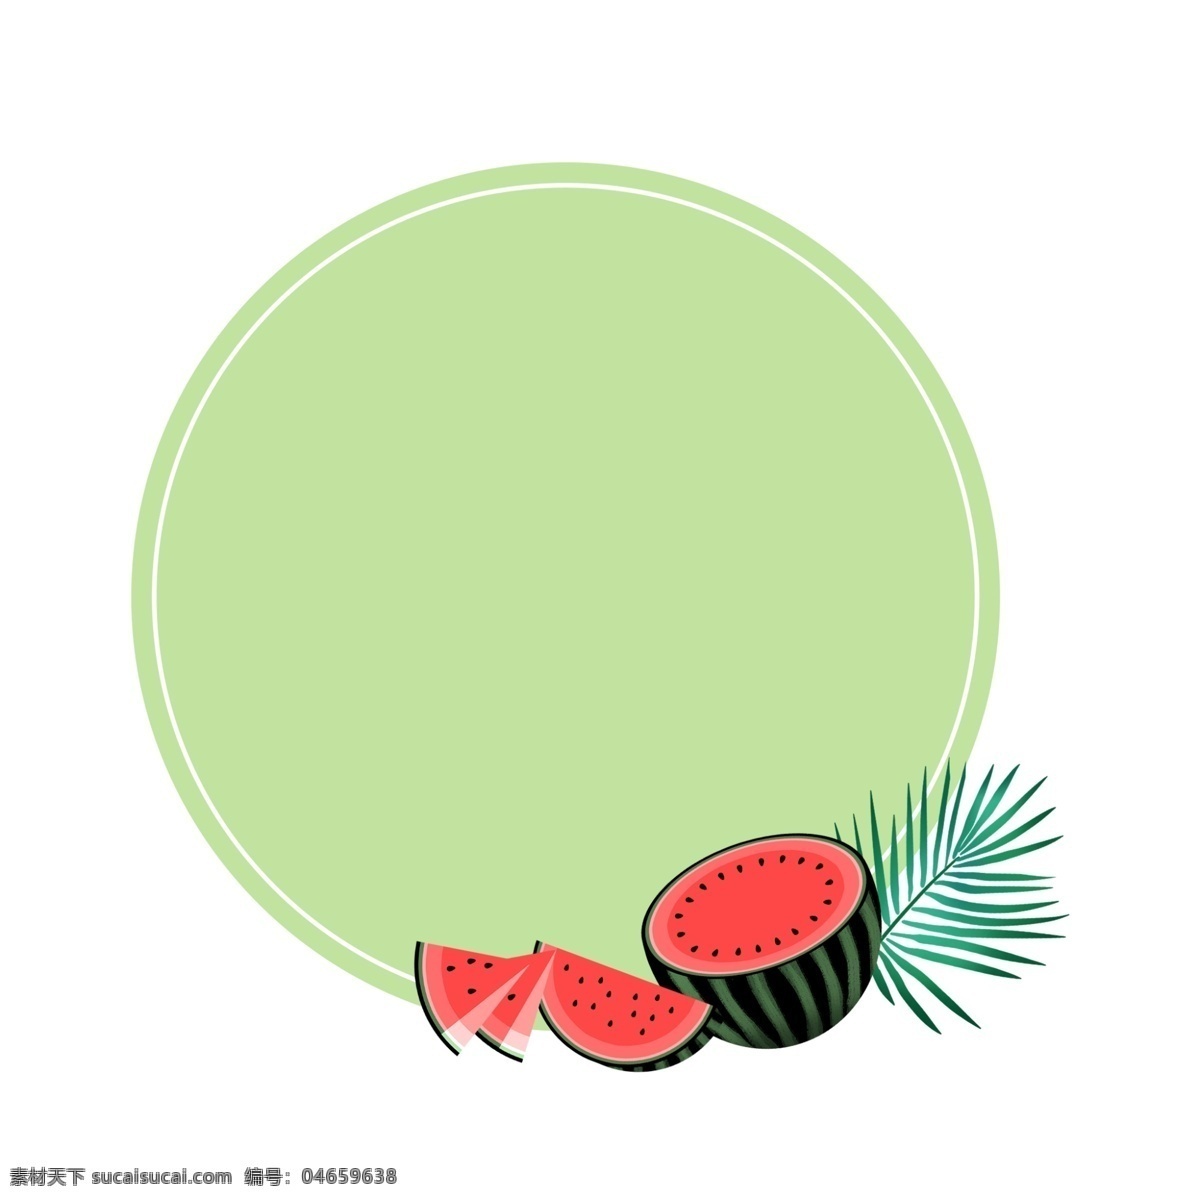 西瓜 圆形 边框 文本 框 水果 夏季 小清新 绿色 红色 叶子 圆形边框 文本框 西瓜边框